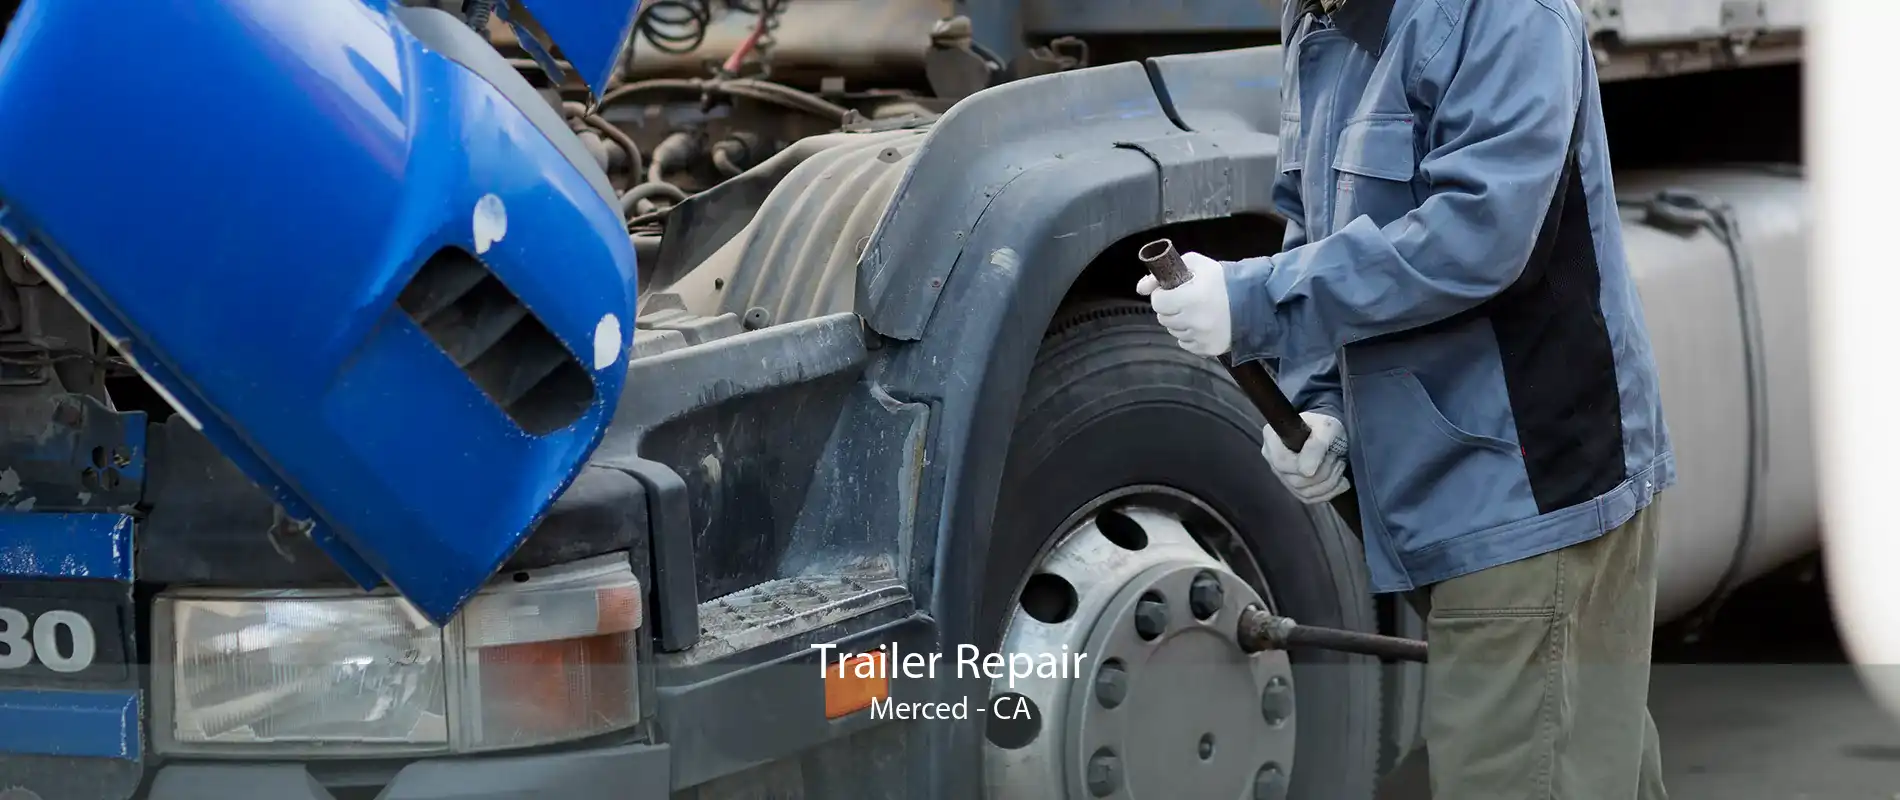 Trailer Repair Merced - CA